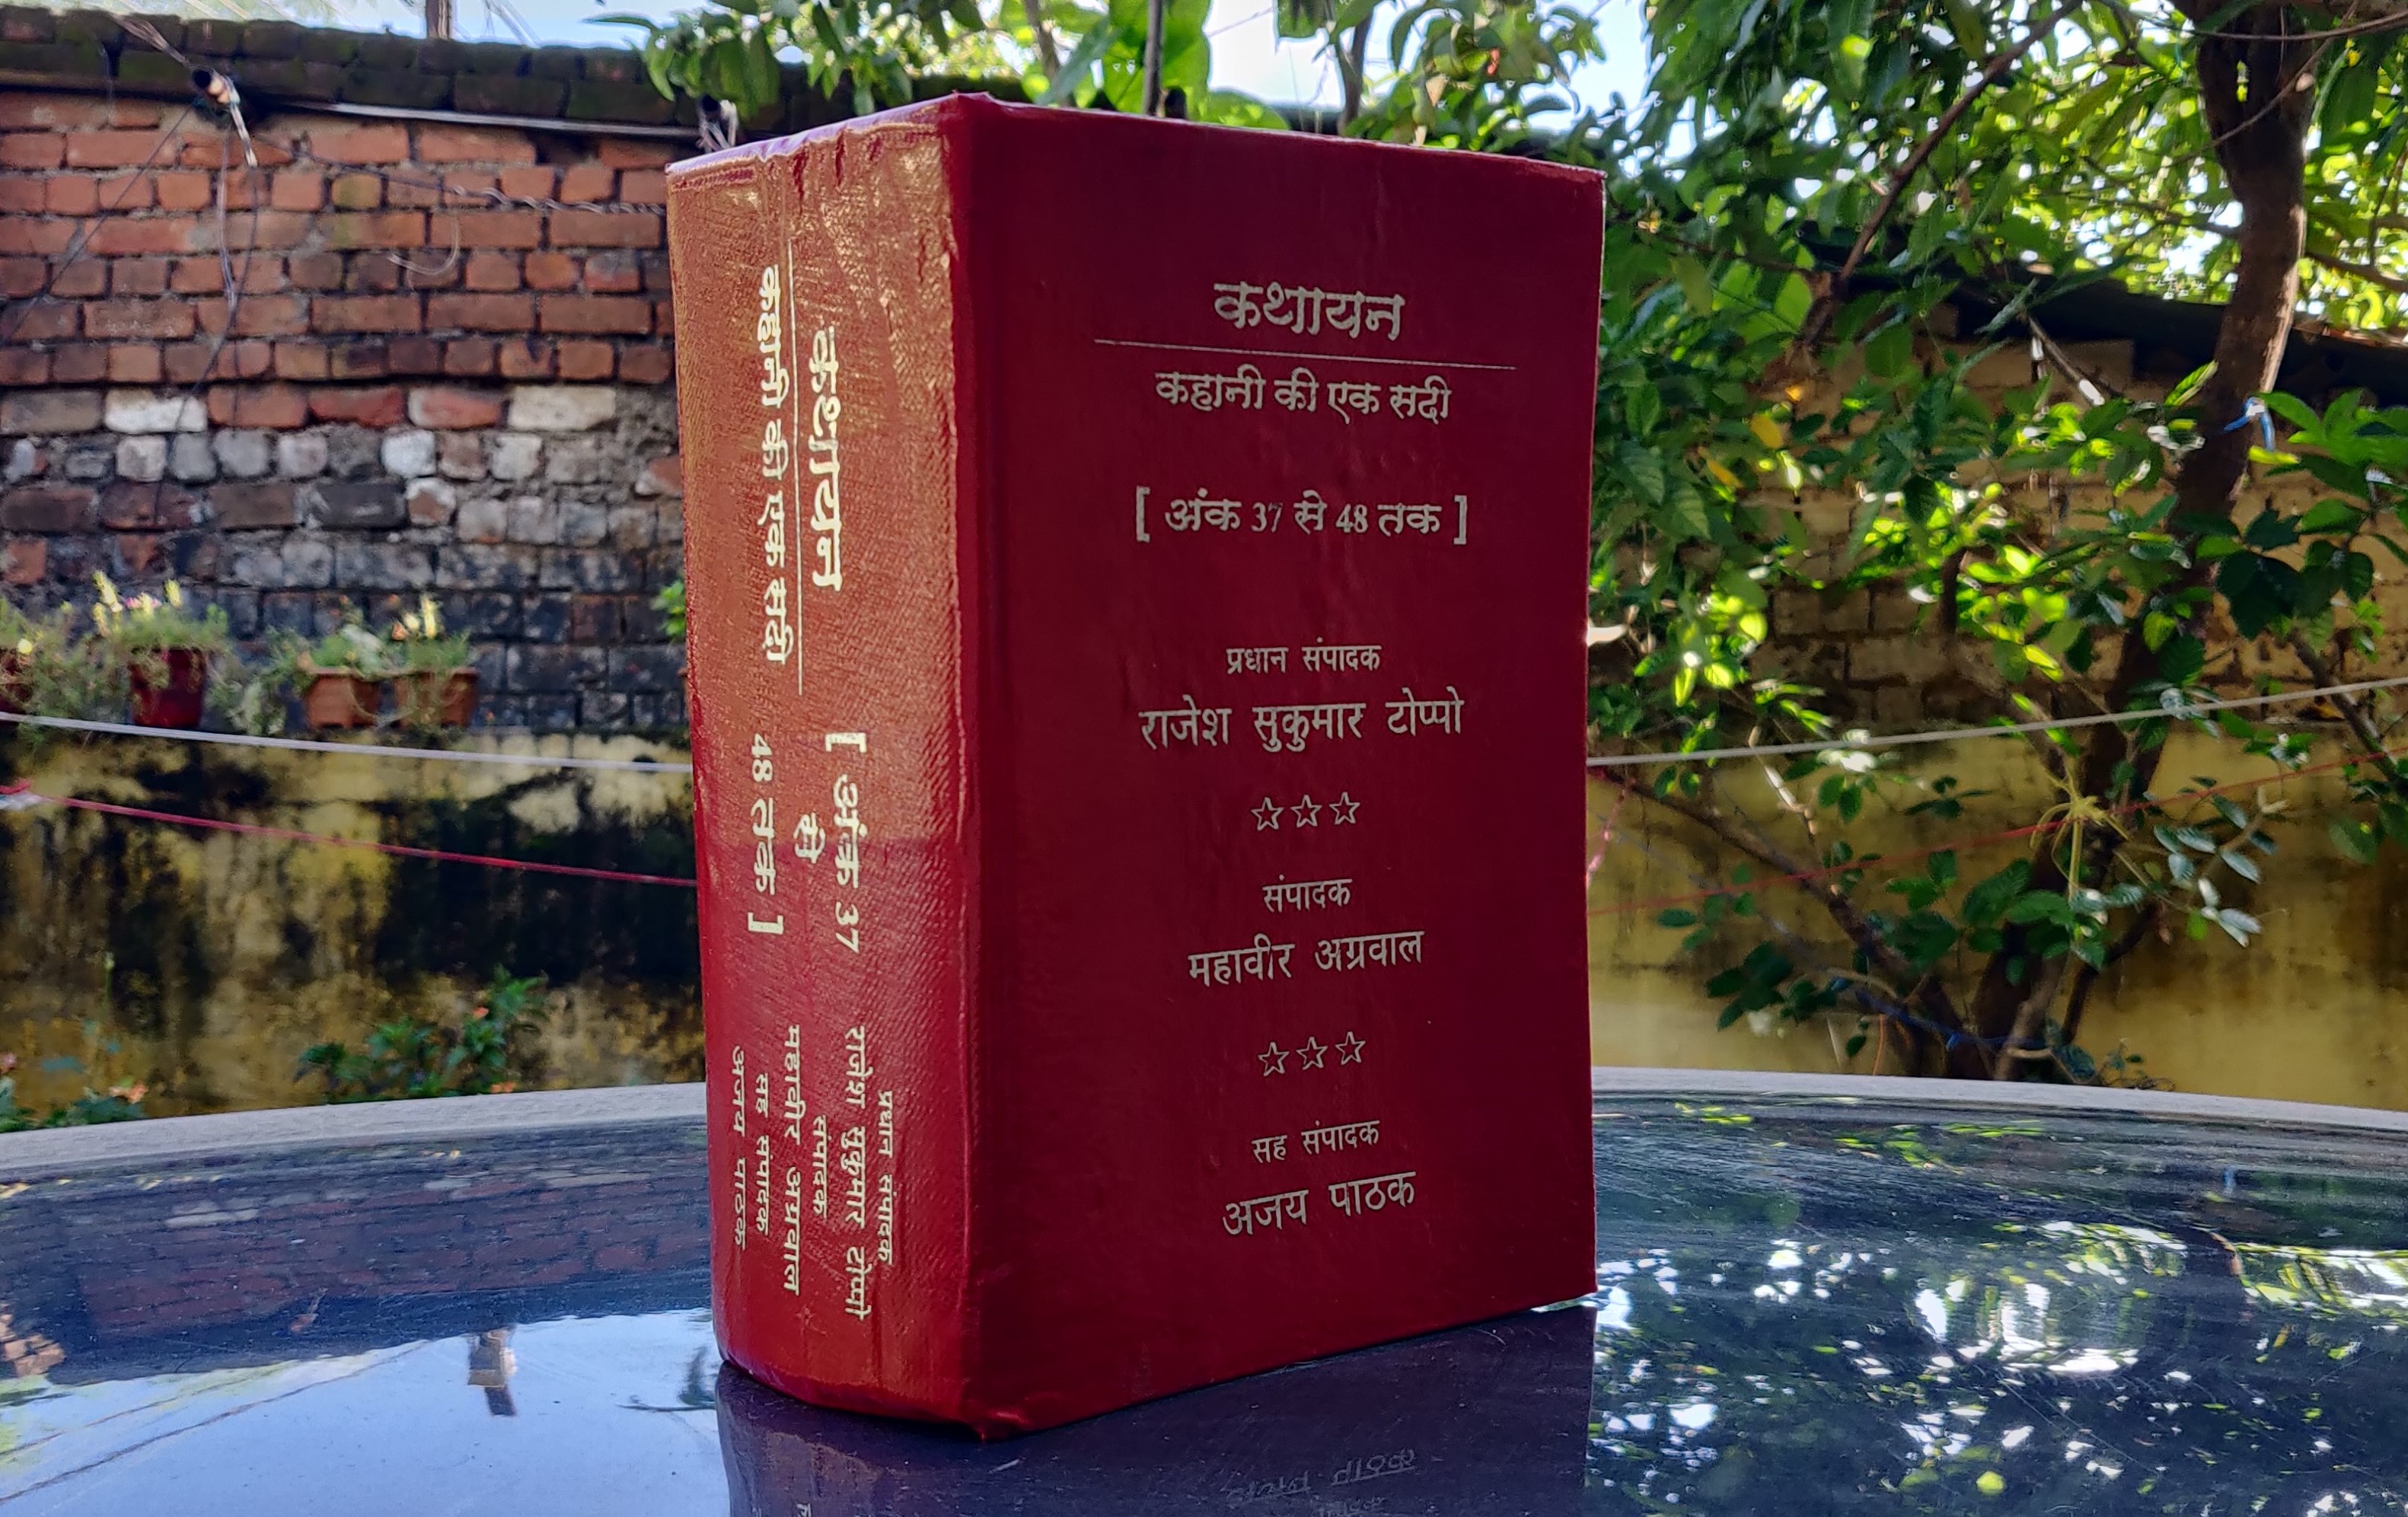 भाजपा के शासनकाल में राजेश सुकुमार टोप्पो प्रधान संपादक भी थे… और उनके डायरेक्शन में छपी थी रामायण और महाभारत से भी ज्यादा मोटी किताब